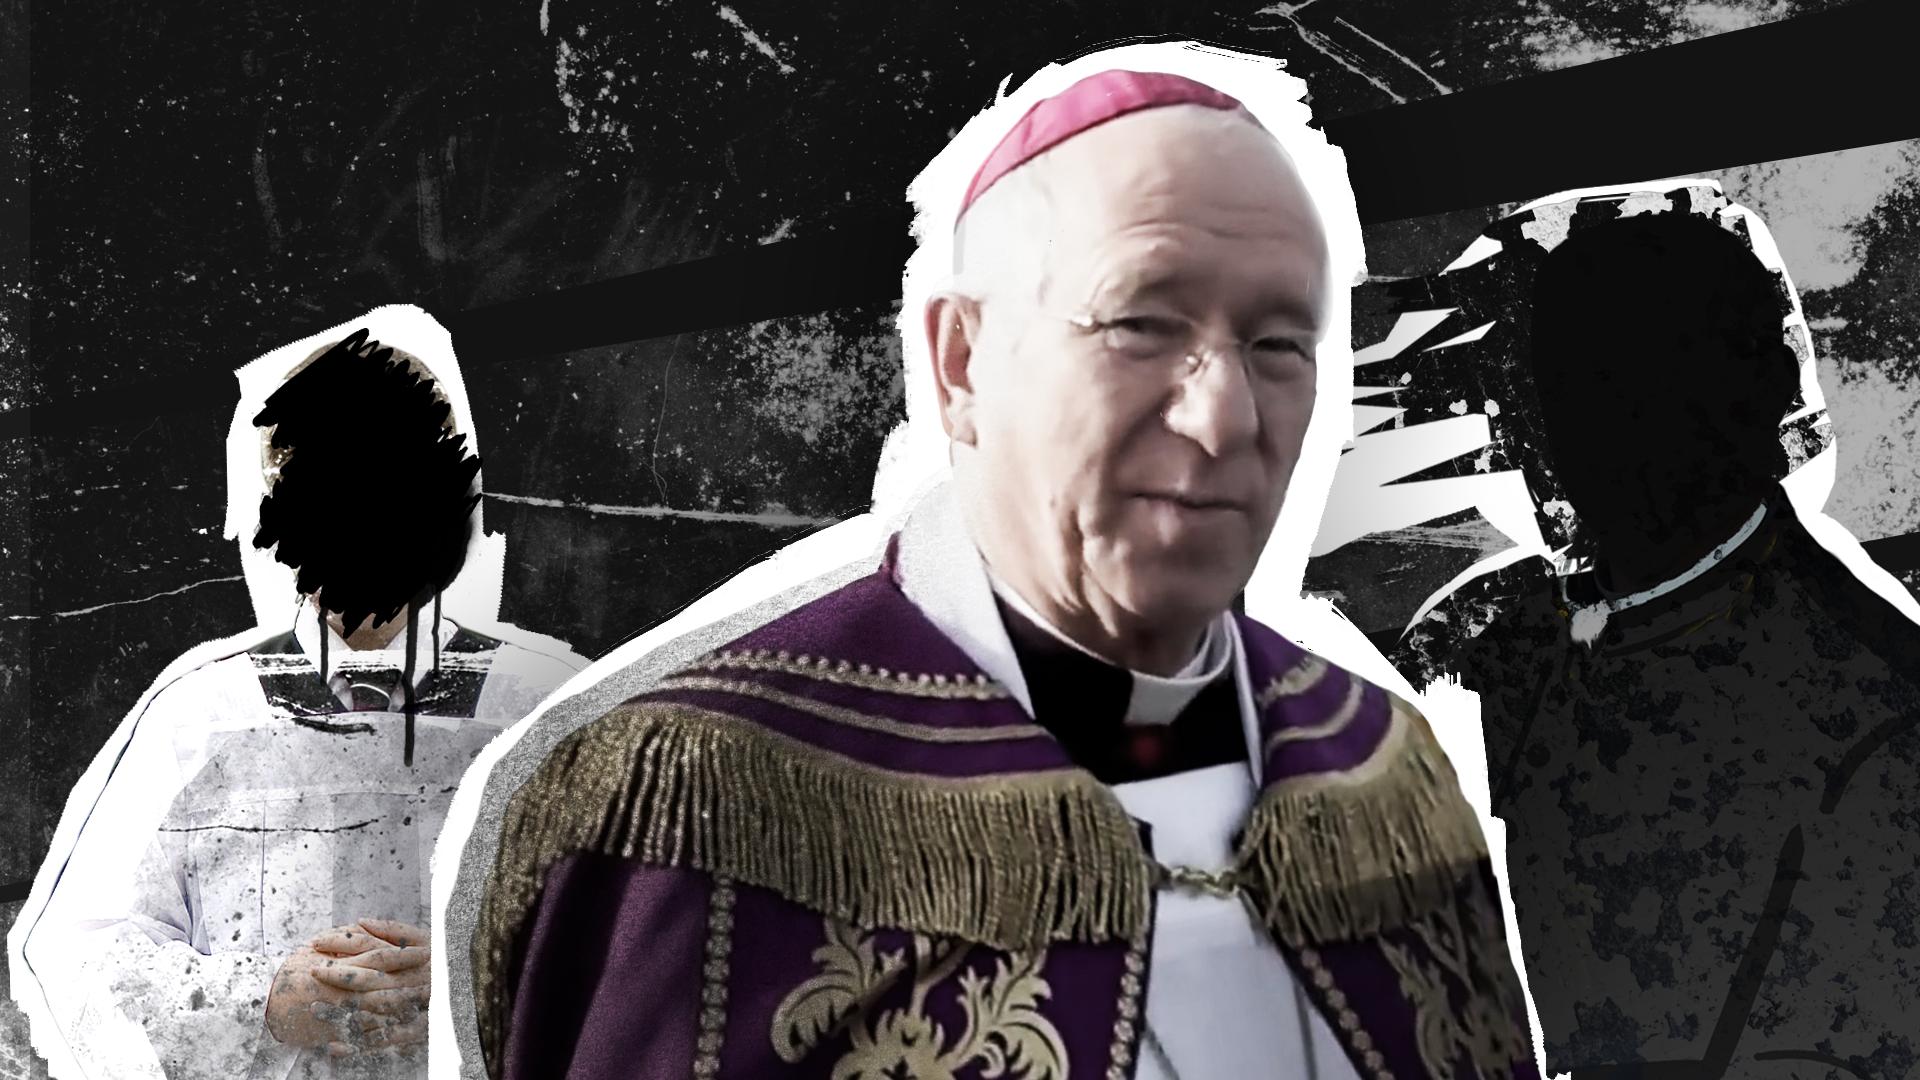 biskup Andrzej Dziuba krył księdza pedofila